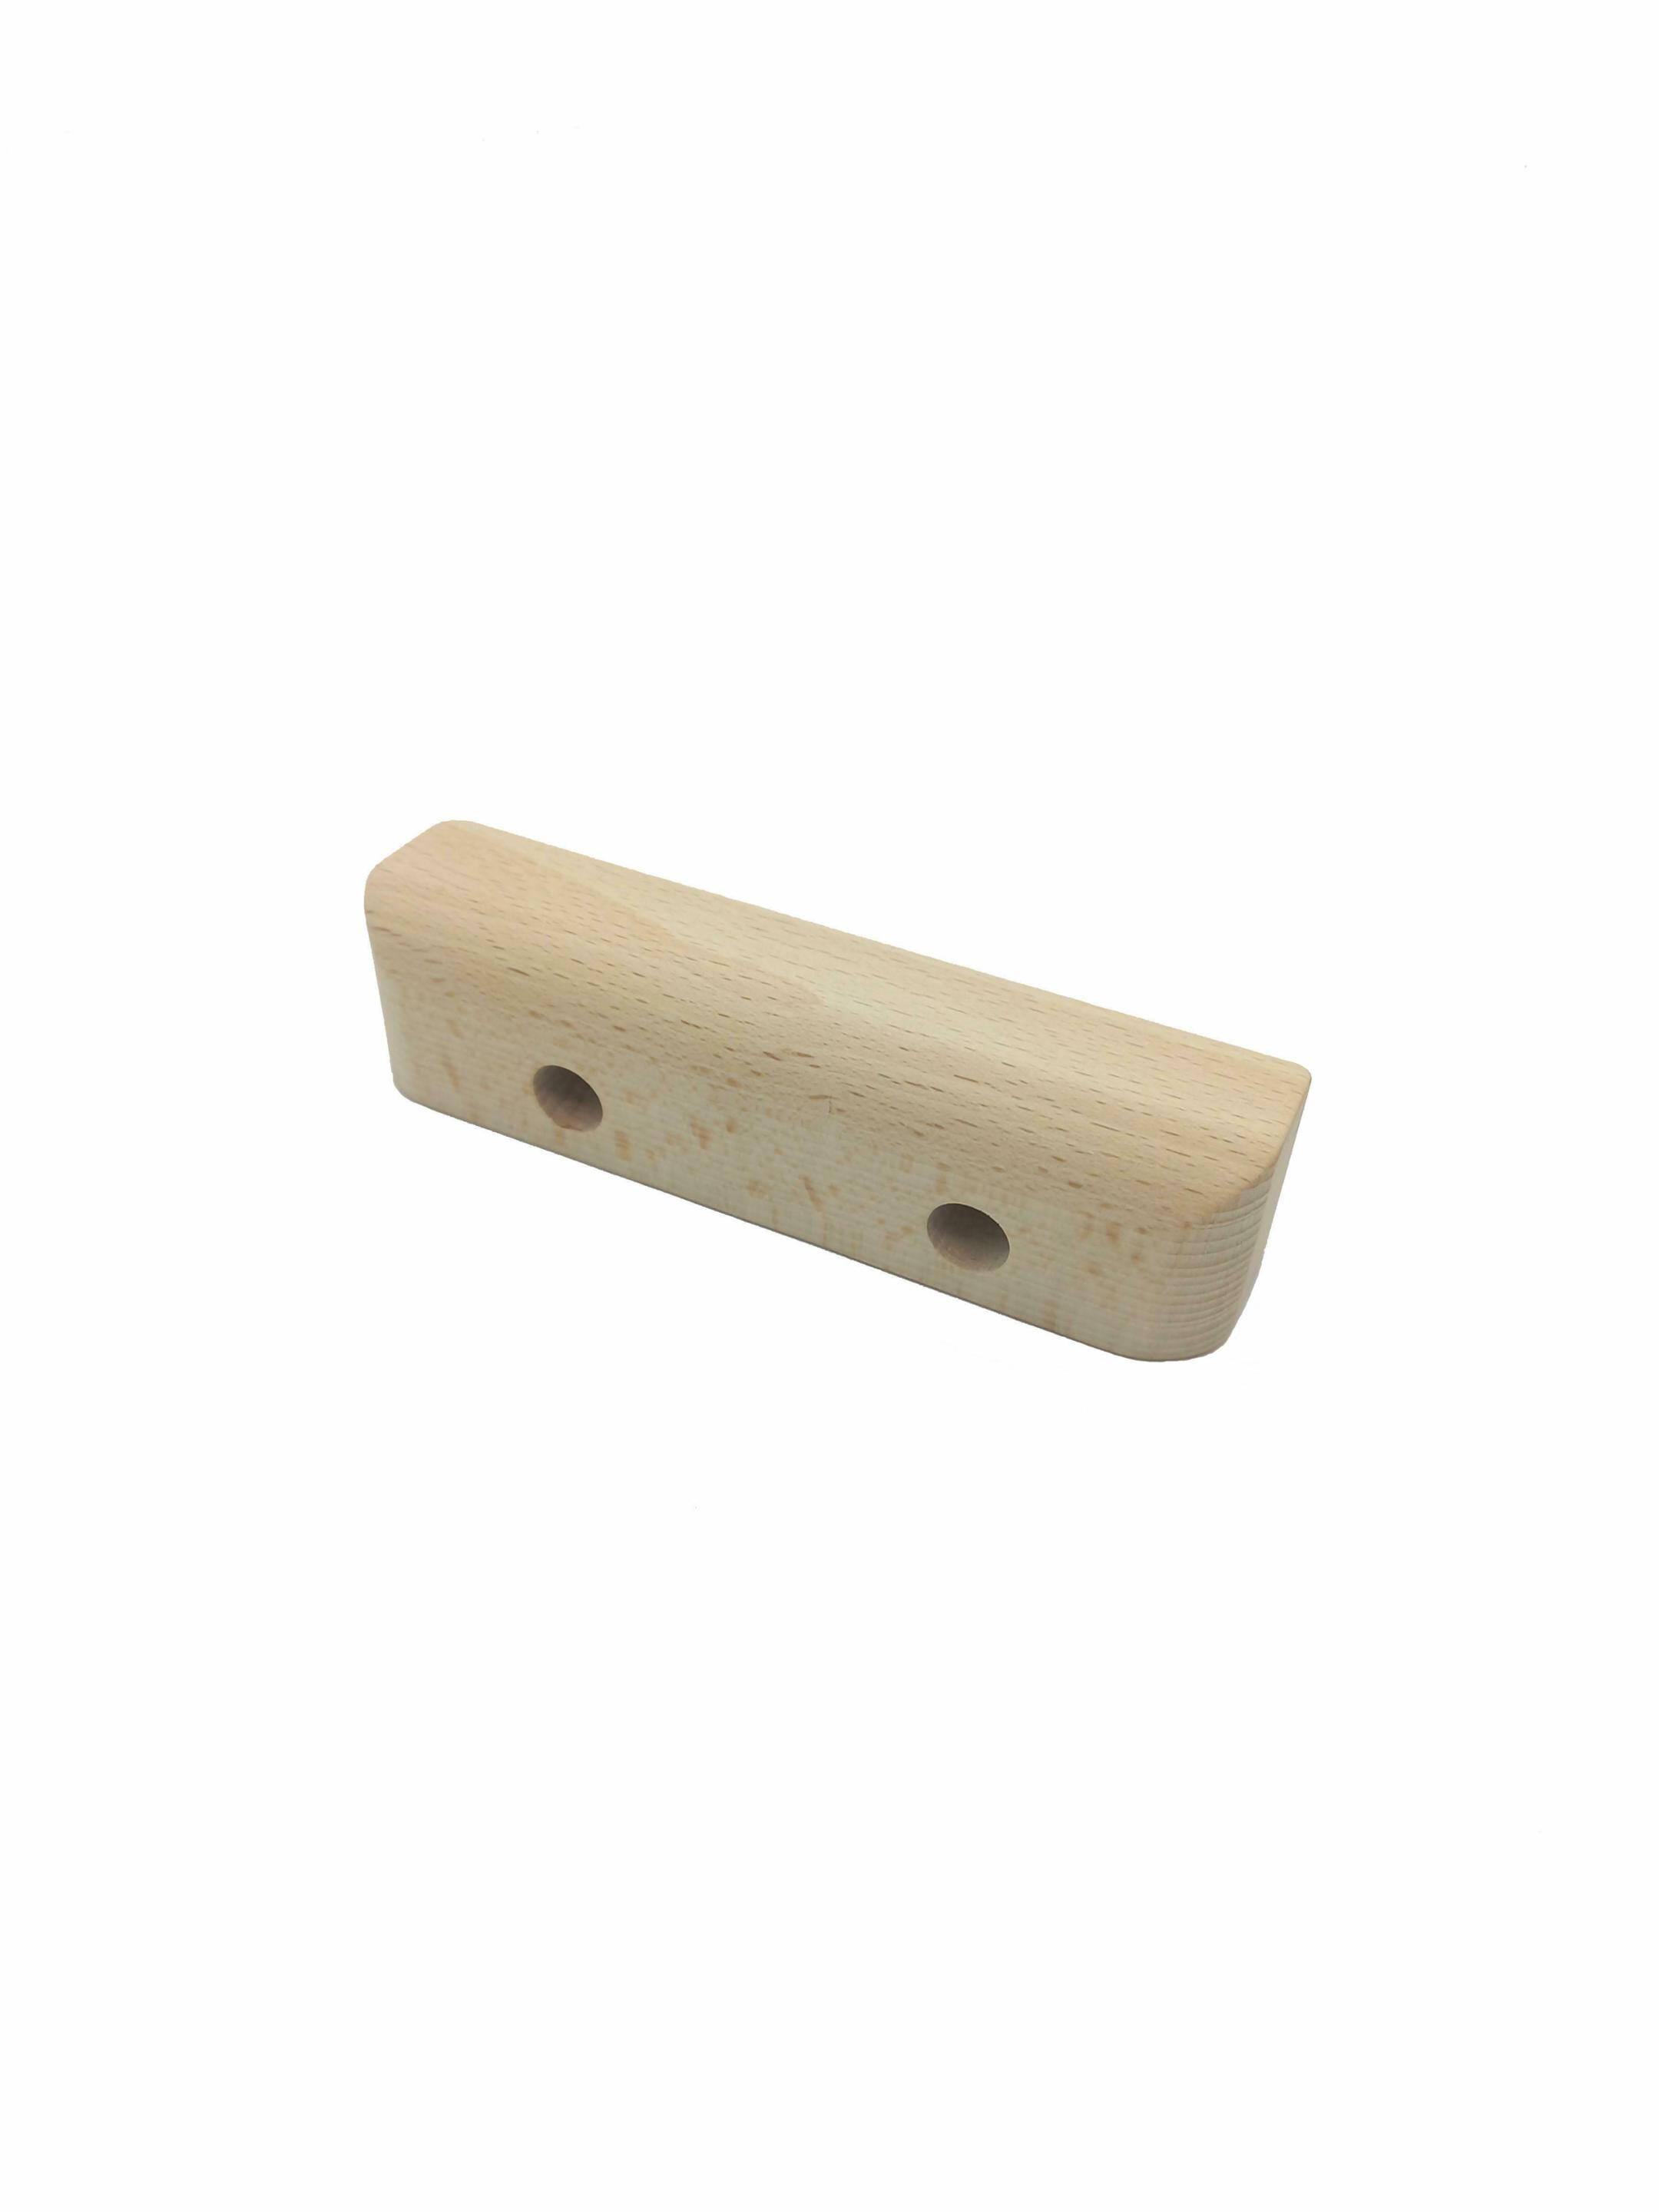 Nóżka Drewniana |H-4 cm L-14 cm|Surowa (Zdjęcie 3)